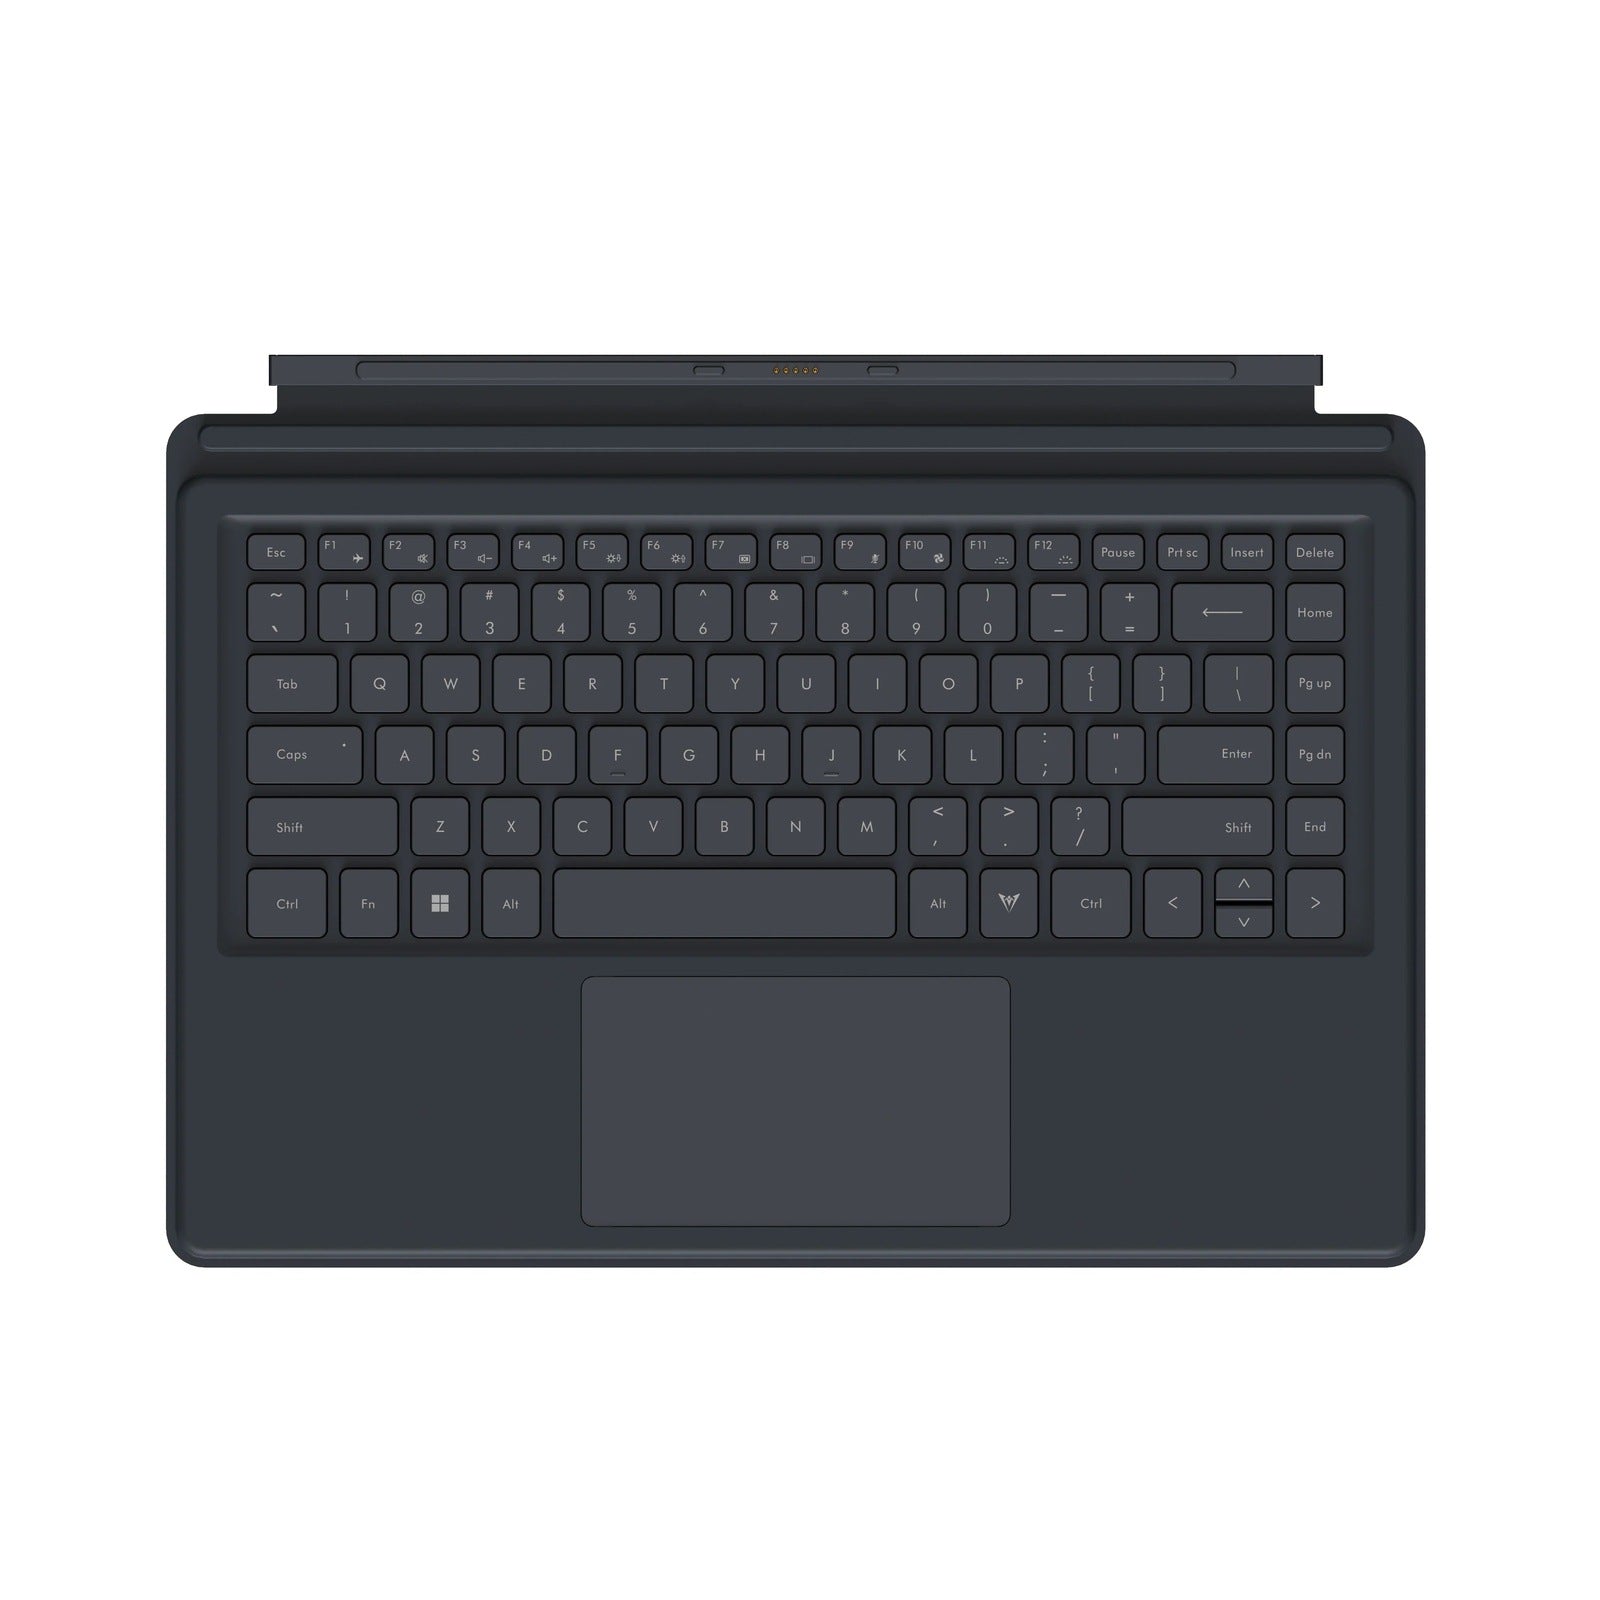 Miniforum keyboard for tablet V3